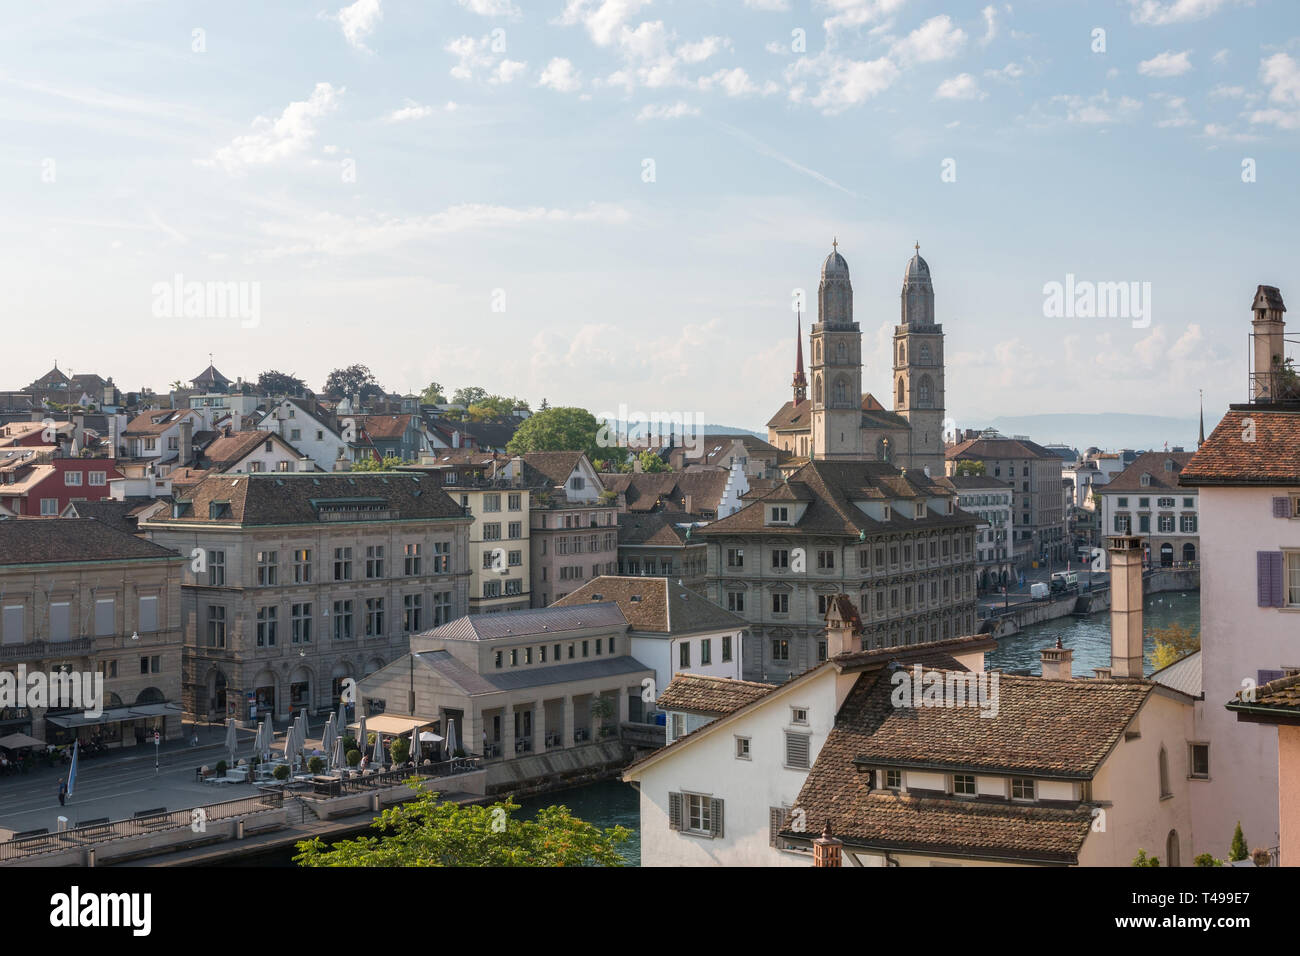 Vista aérea del histórico centro de la ciudad de Zurich con la famosa iglesia Grossmunster y río Limmat desde el parque Lindenhof, Zurich, Suiza. Paisaje de verano Foto de stock